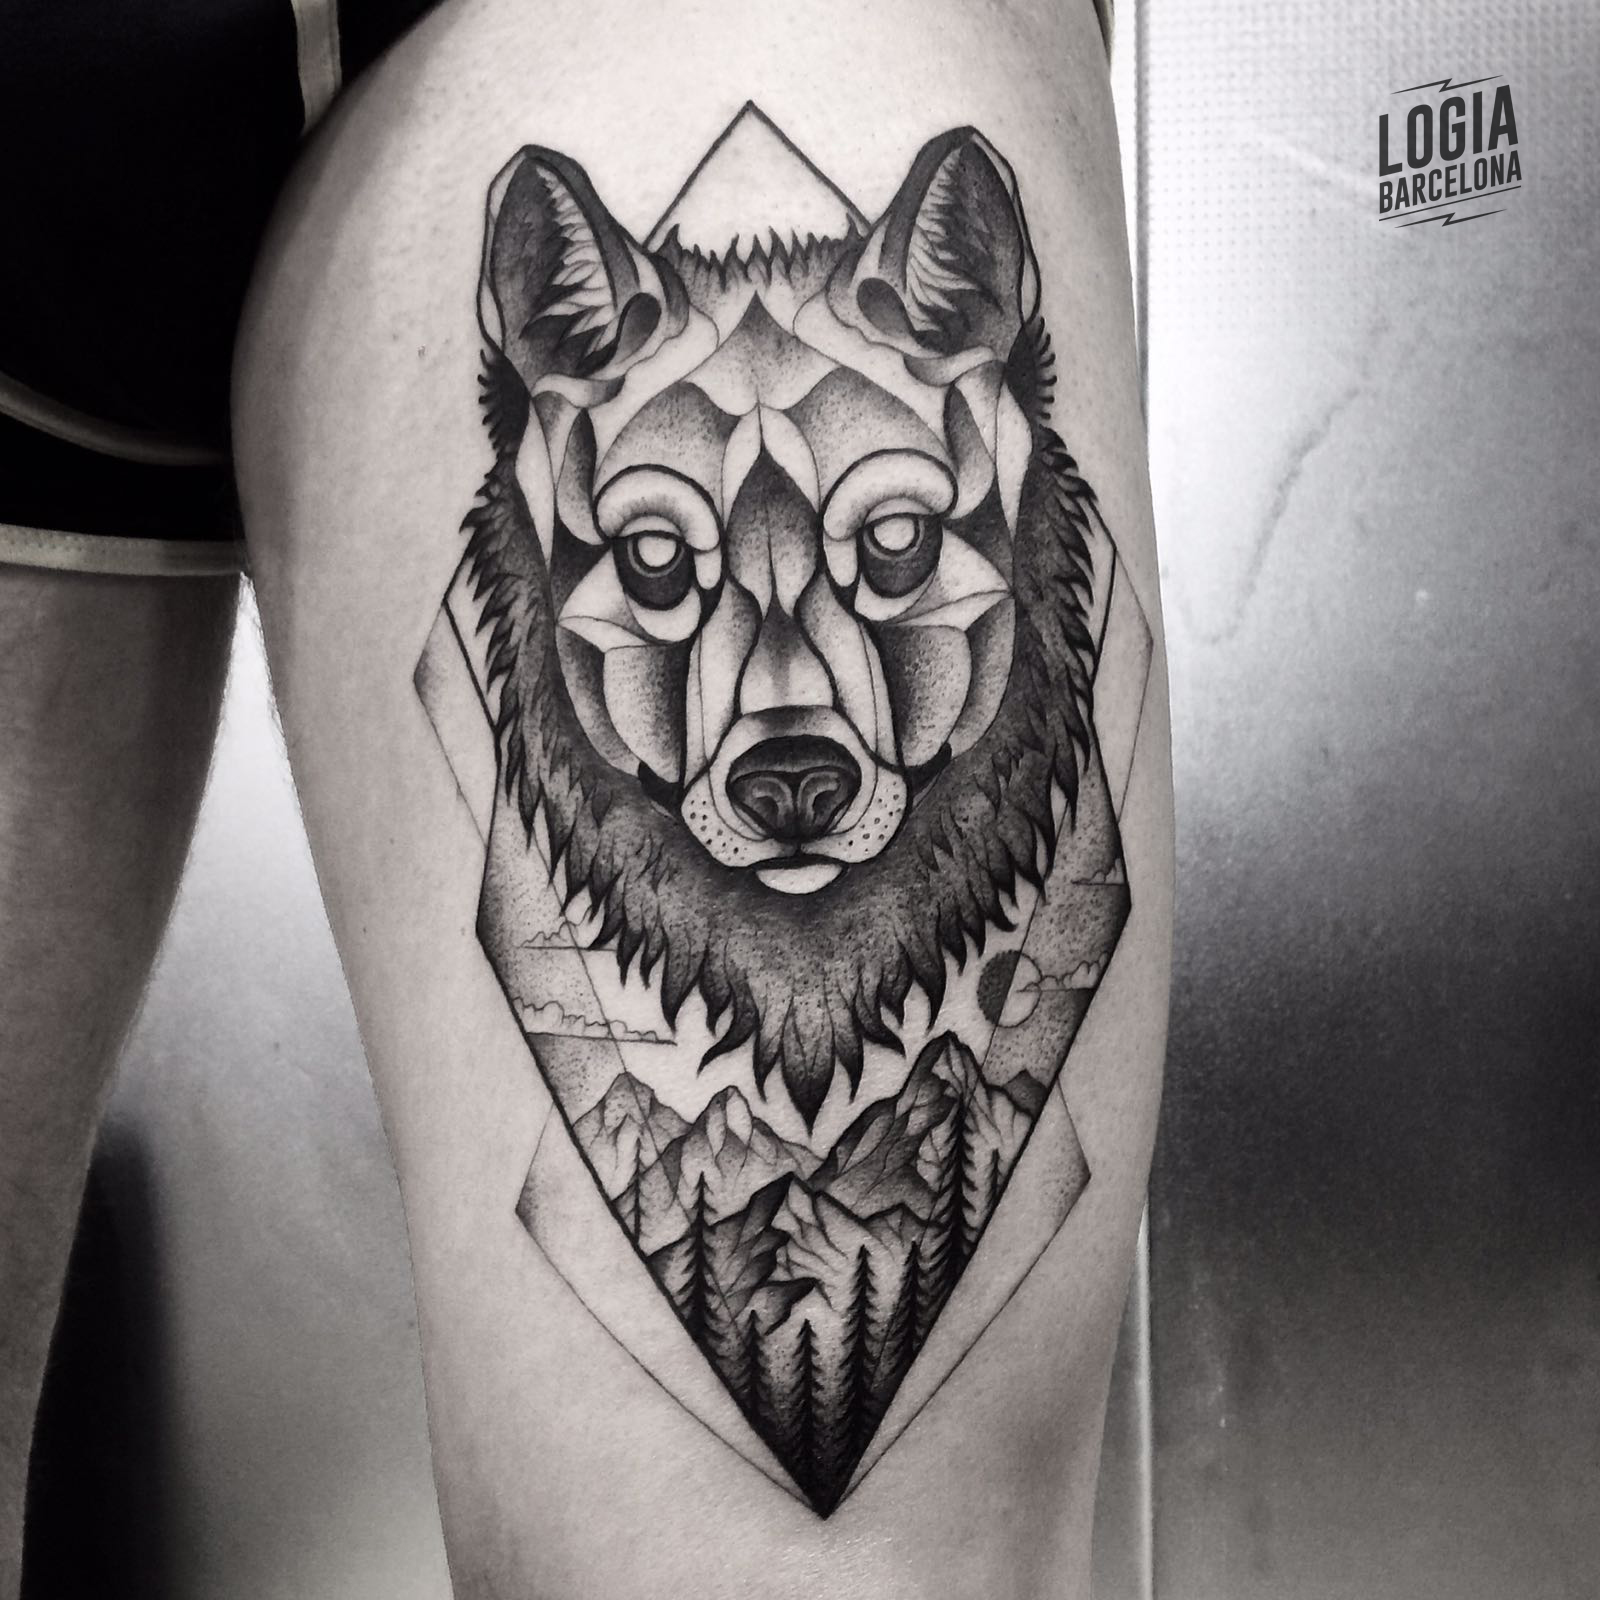 Salvajes y únicos: Tatuajes de lobos